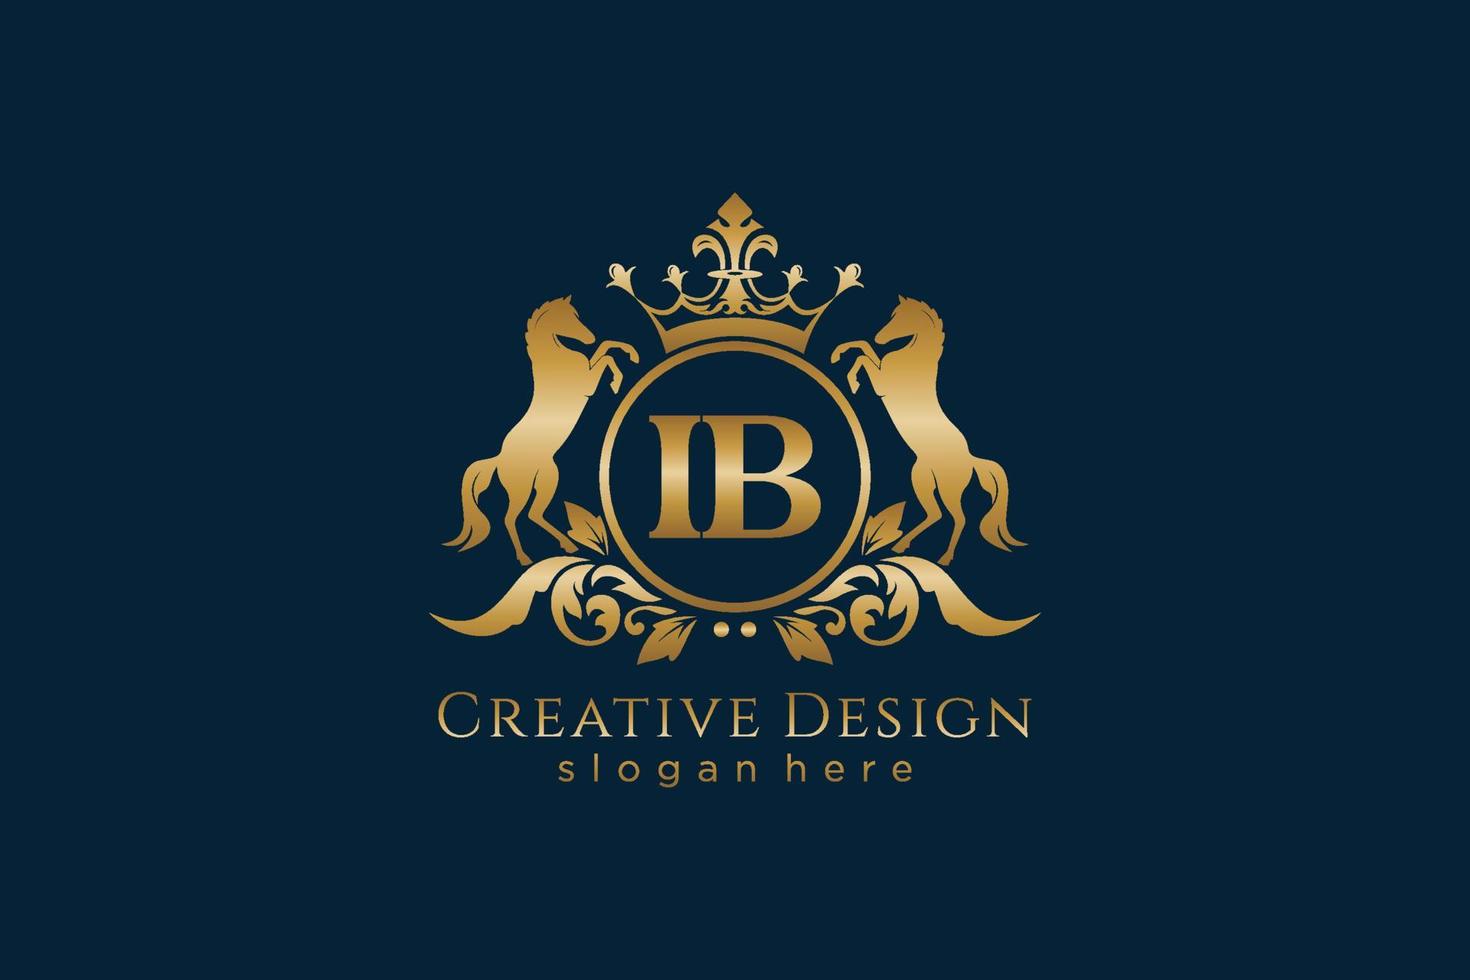 crista dourada retrô inicial ib com círculo e dois cavalos, modelo de crachá com pergaminhos e coroa real - perfeito para projetos de marca luxuosos vetor